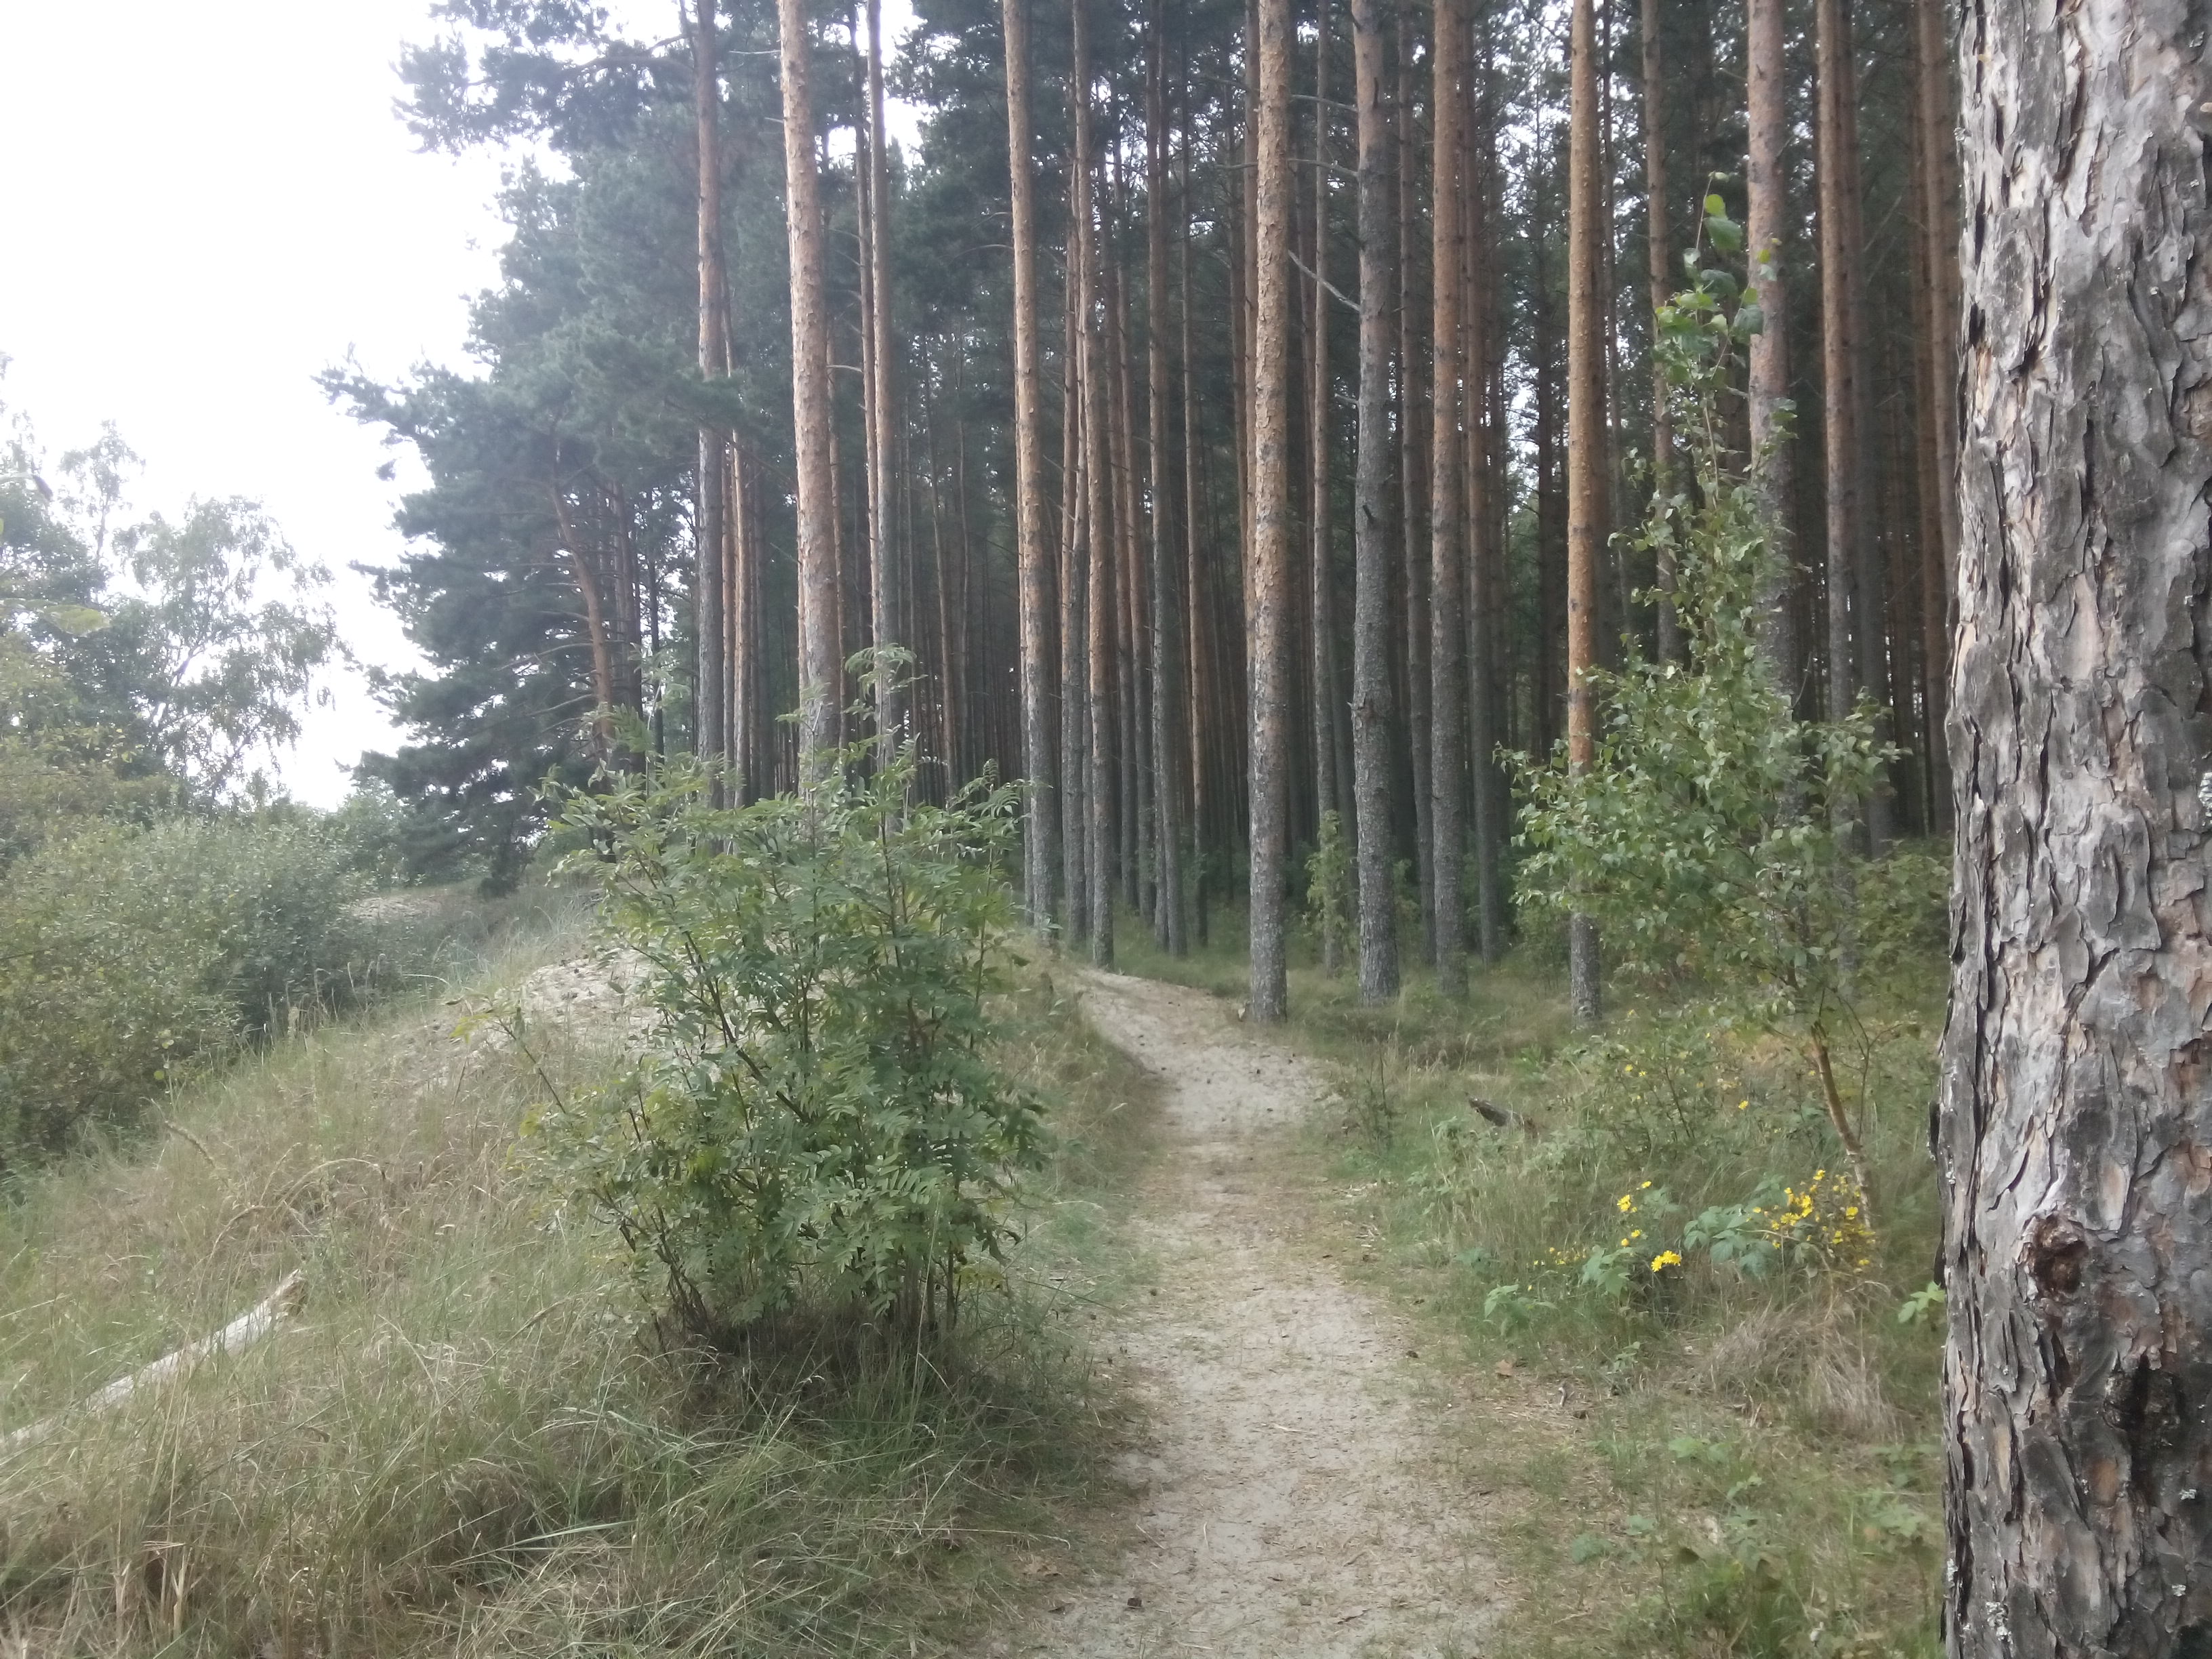 A sandy path leads to many narrow pine trees